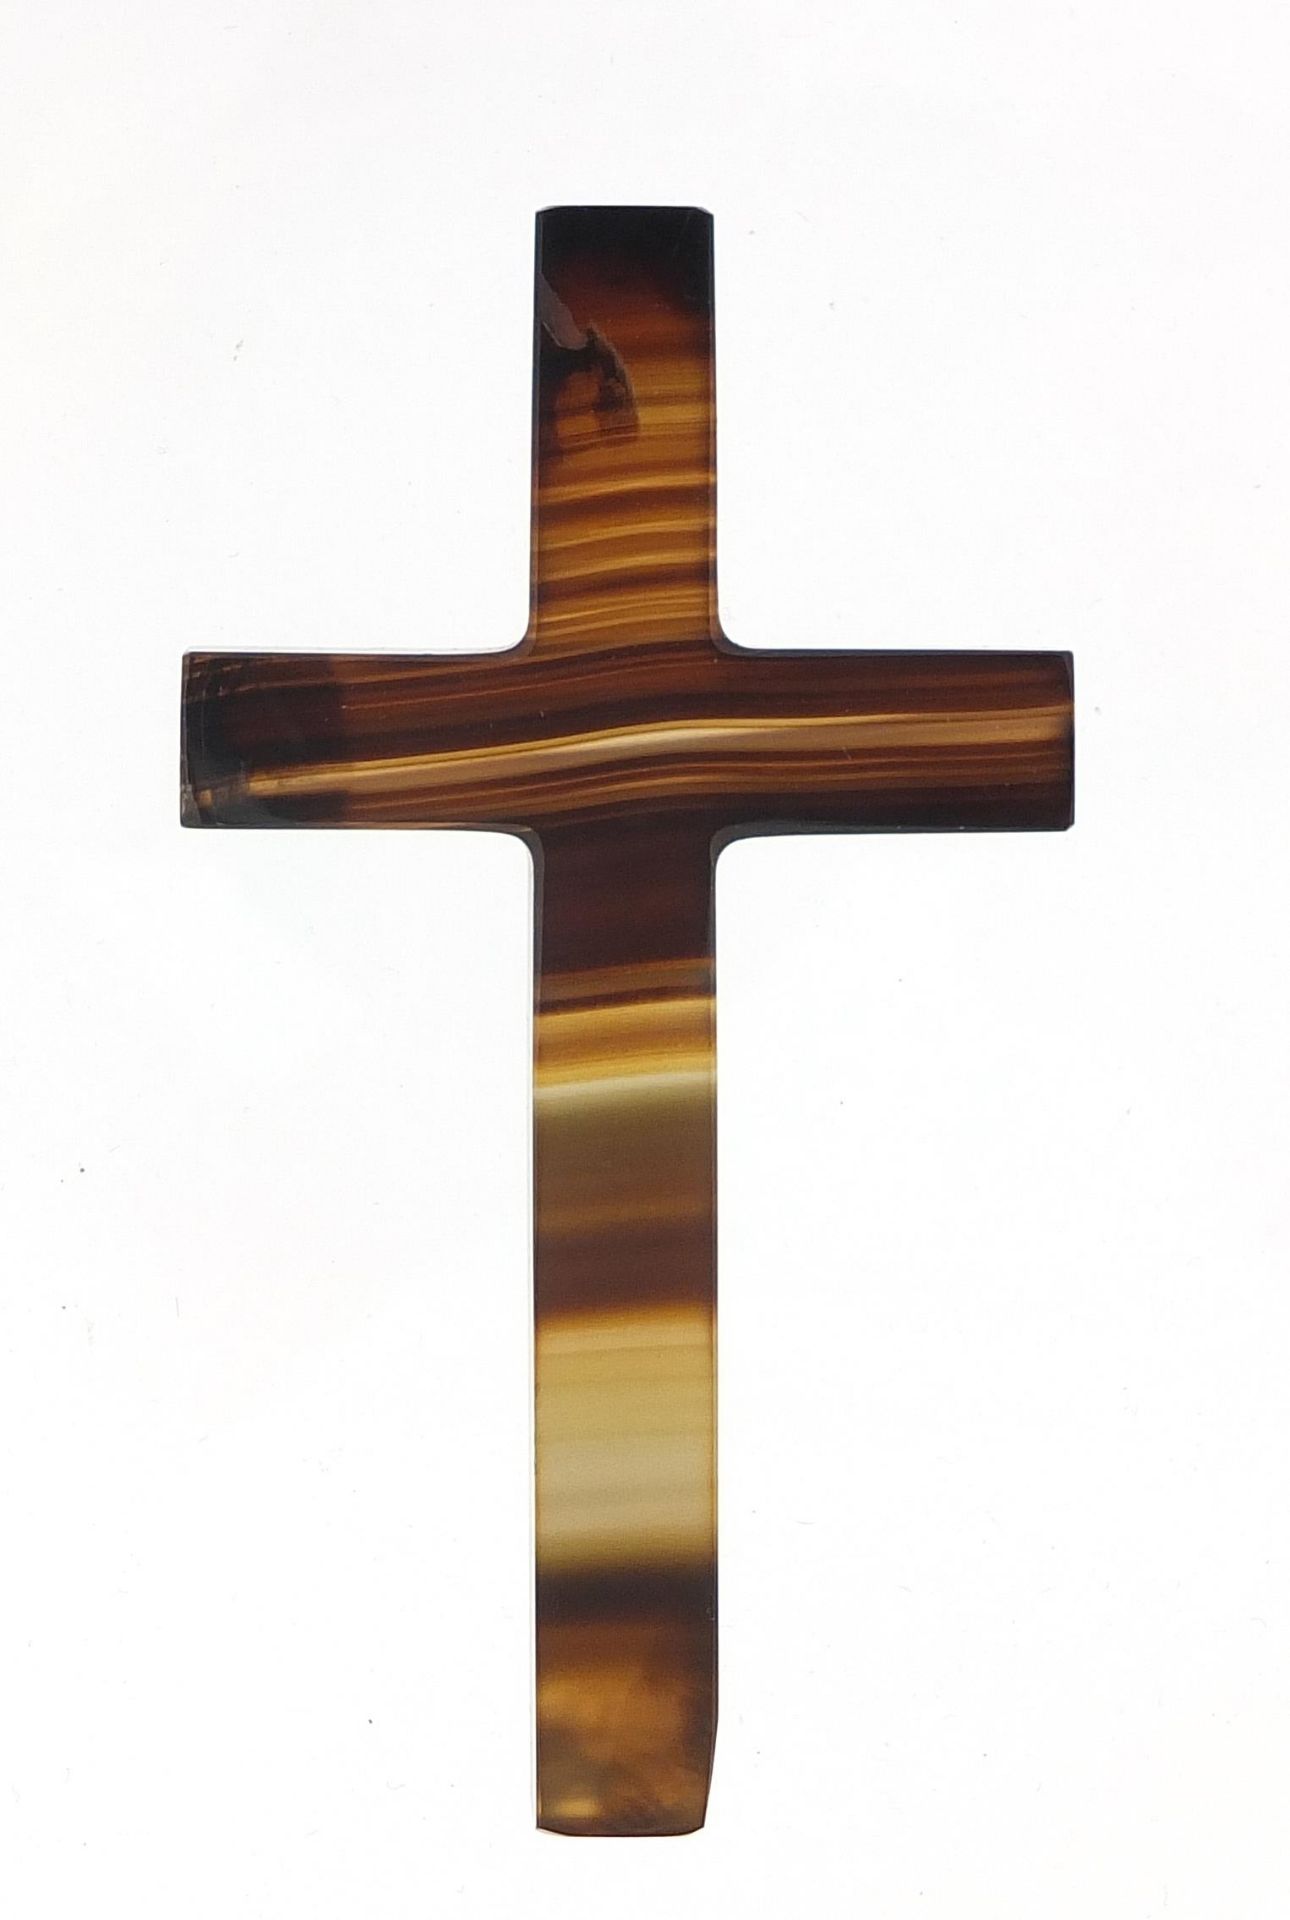 Agate crucifix, 8cm high - Image 2 of 2